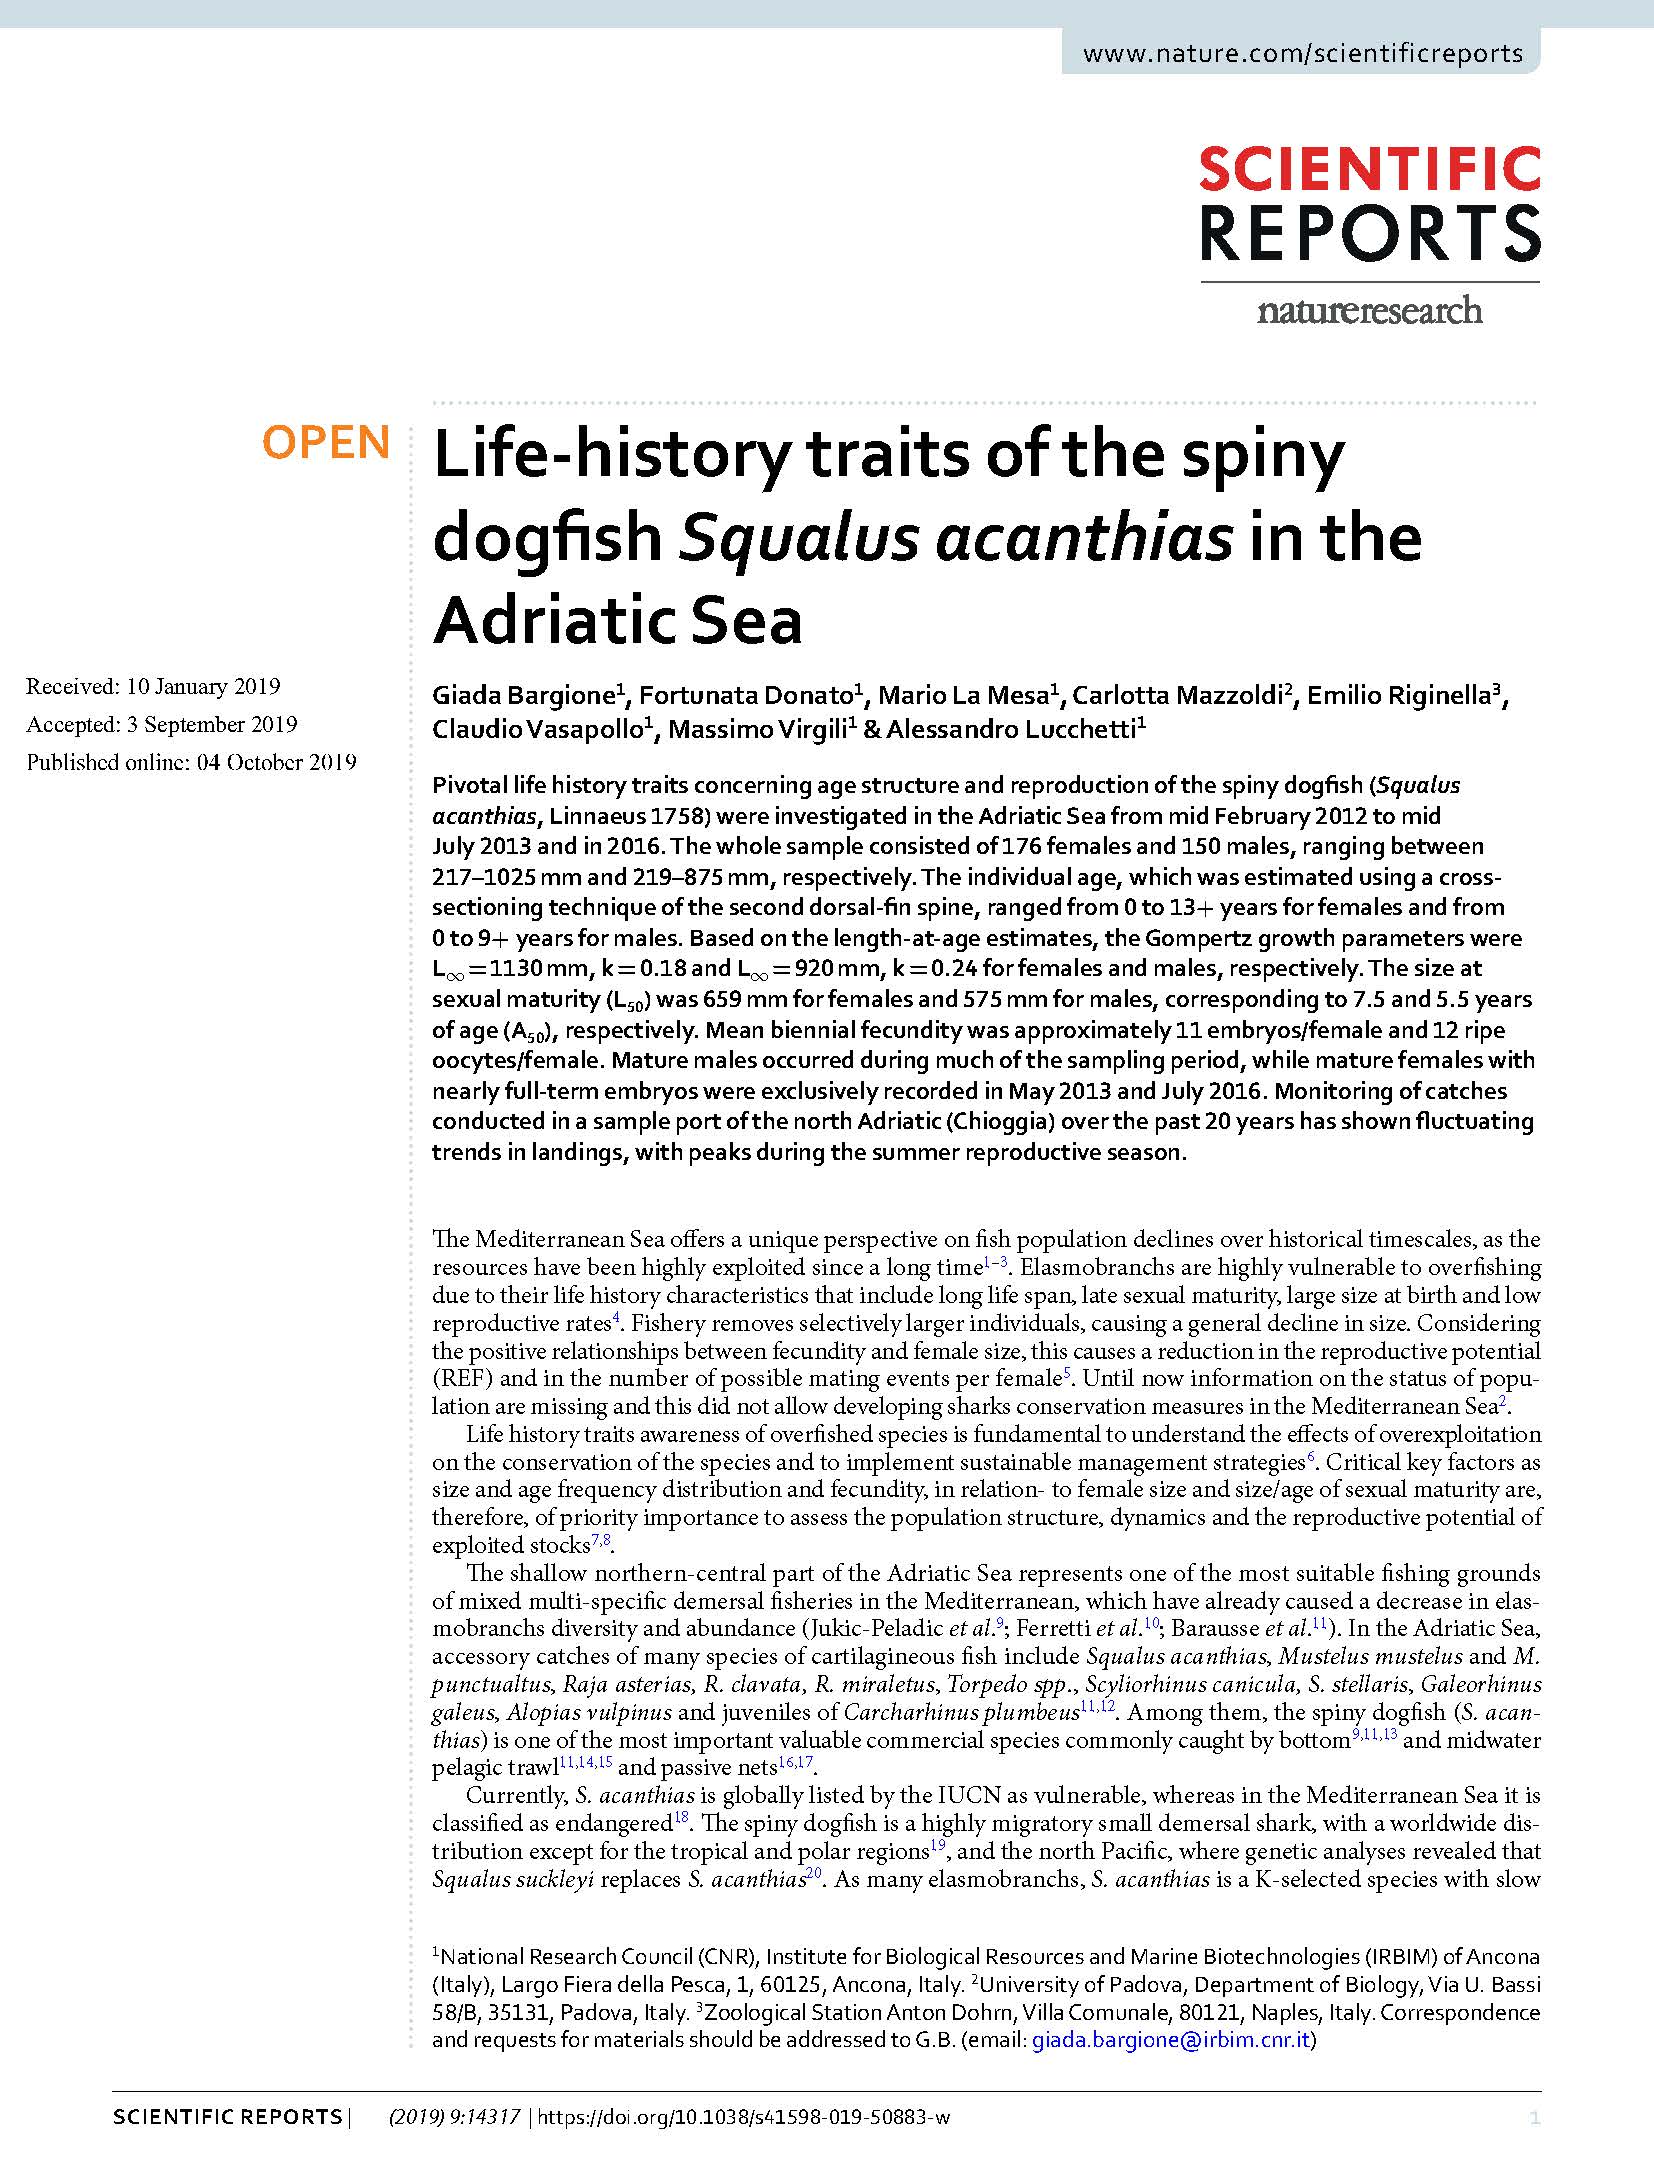 Bargione et al 2019 Squalus acanthias life history